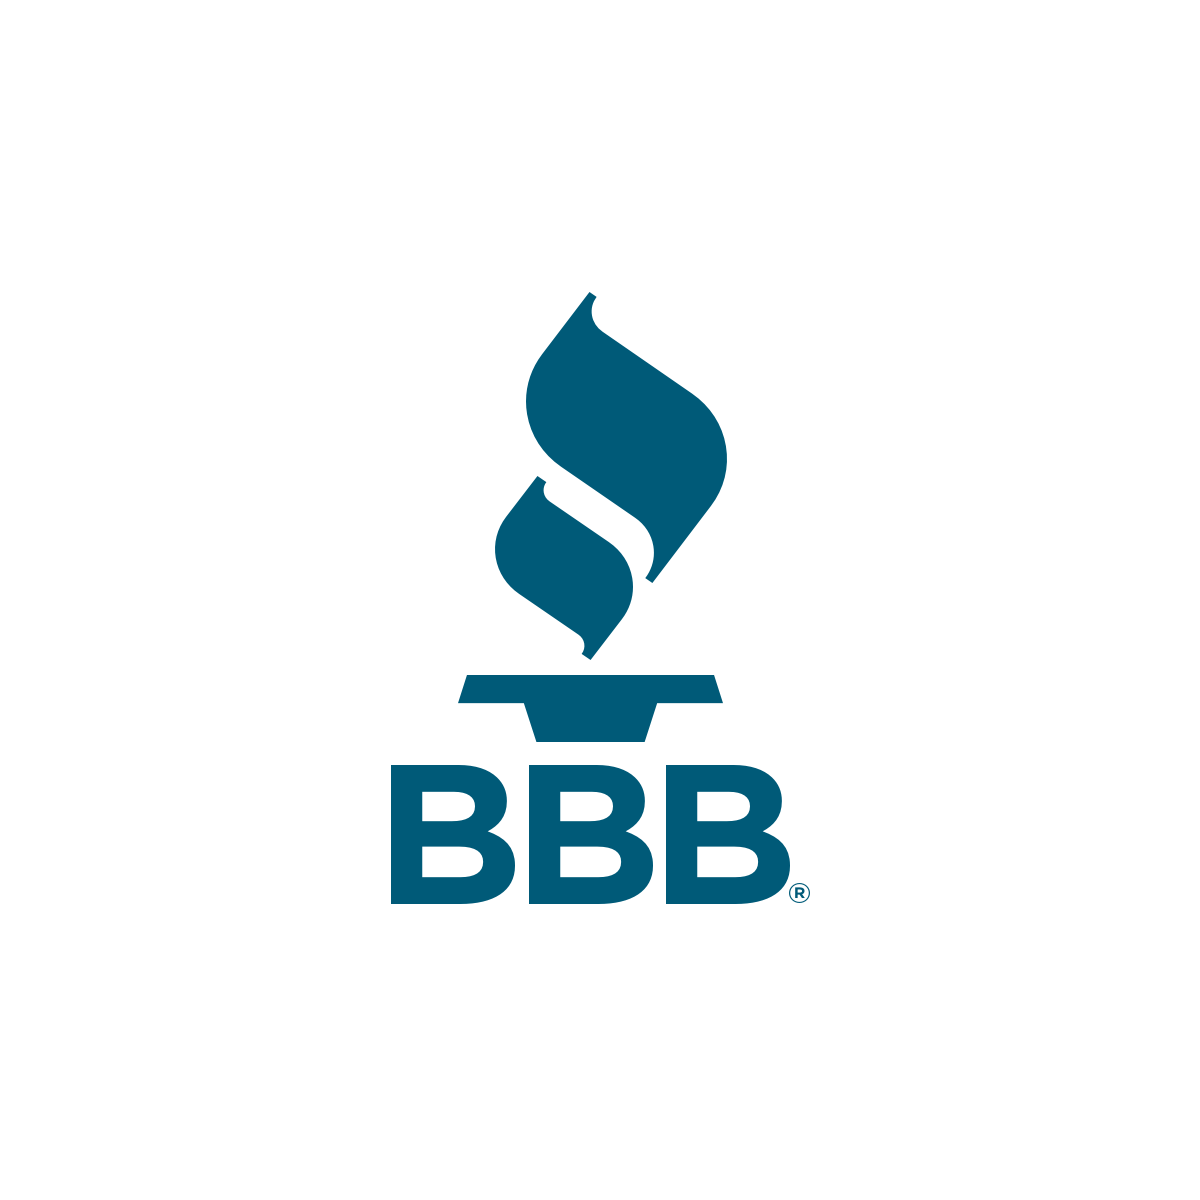 BBB (Better Business Bureau) Proxy